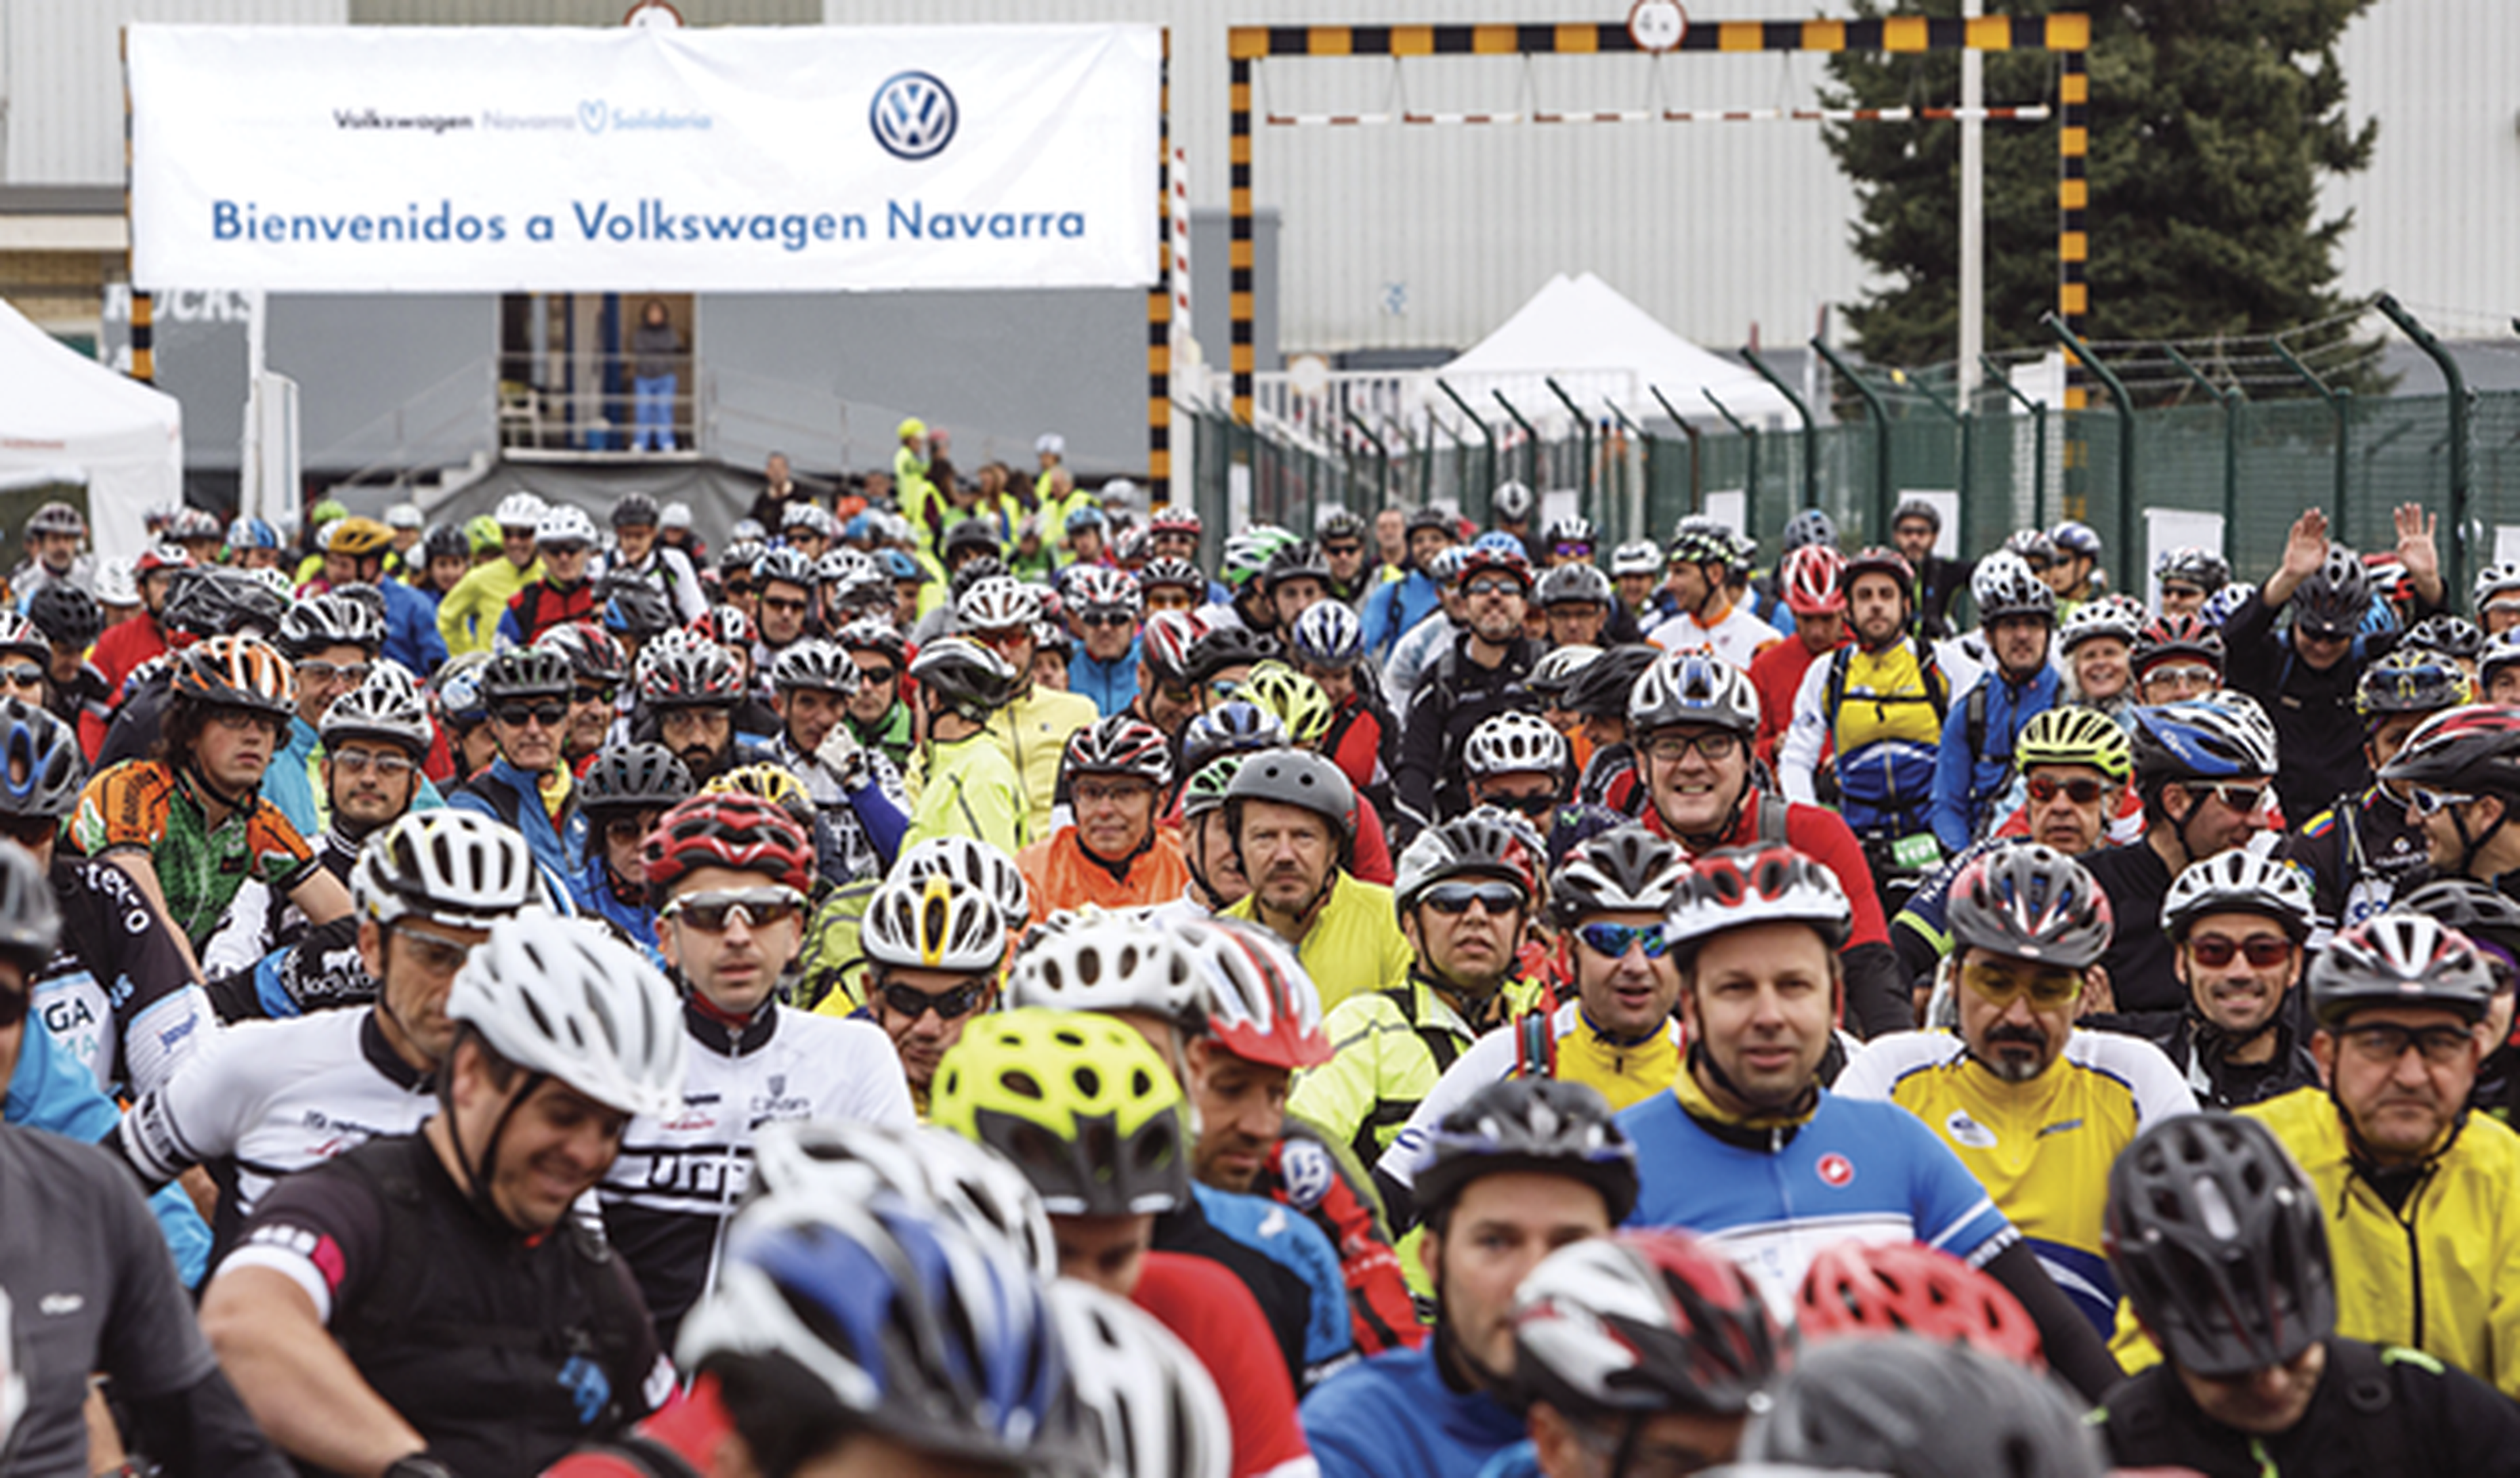 VW recauda 40.000 euros con su Marcha Ciclista